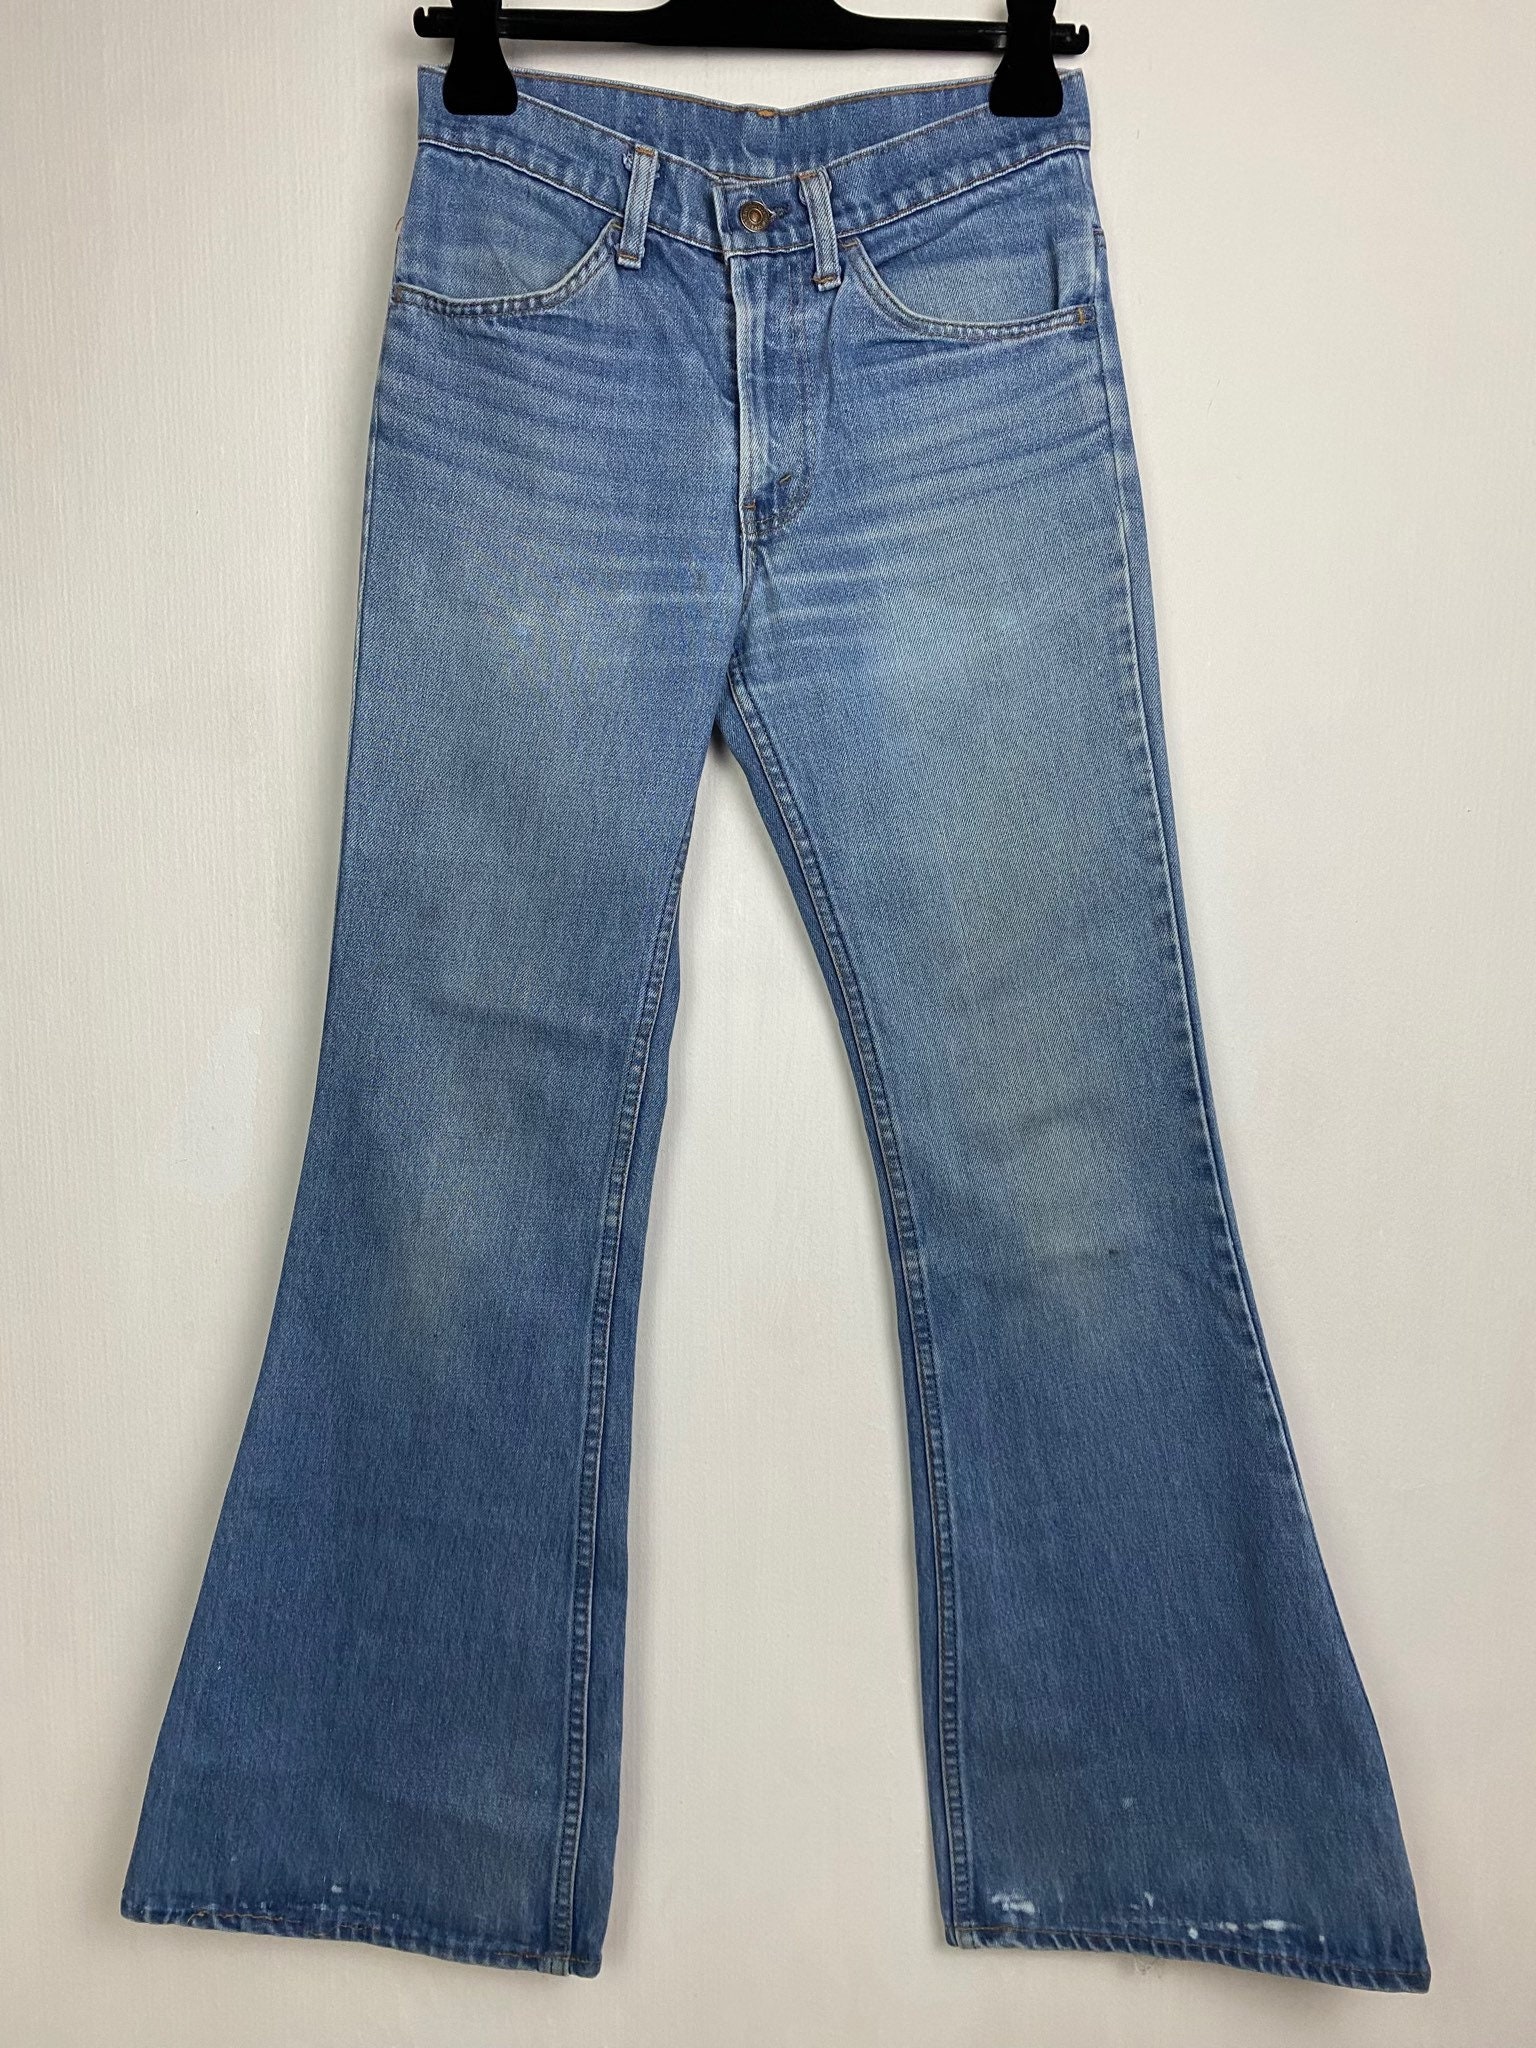 Vintage Levis 684 W25 L33 Flares Jeans Orange Tab 70s Bell Bottom 